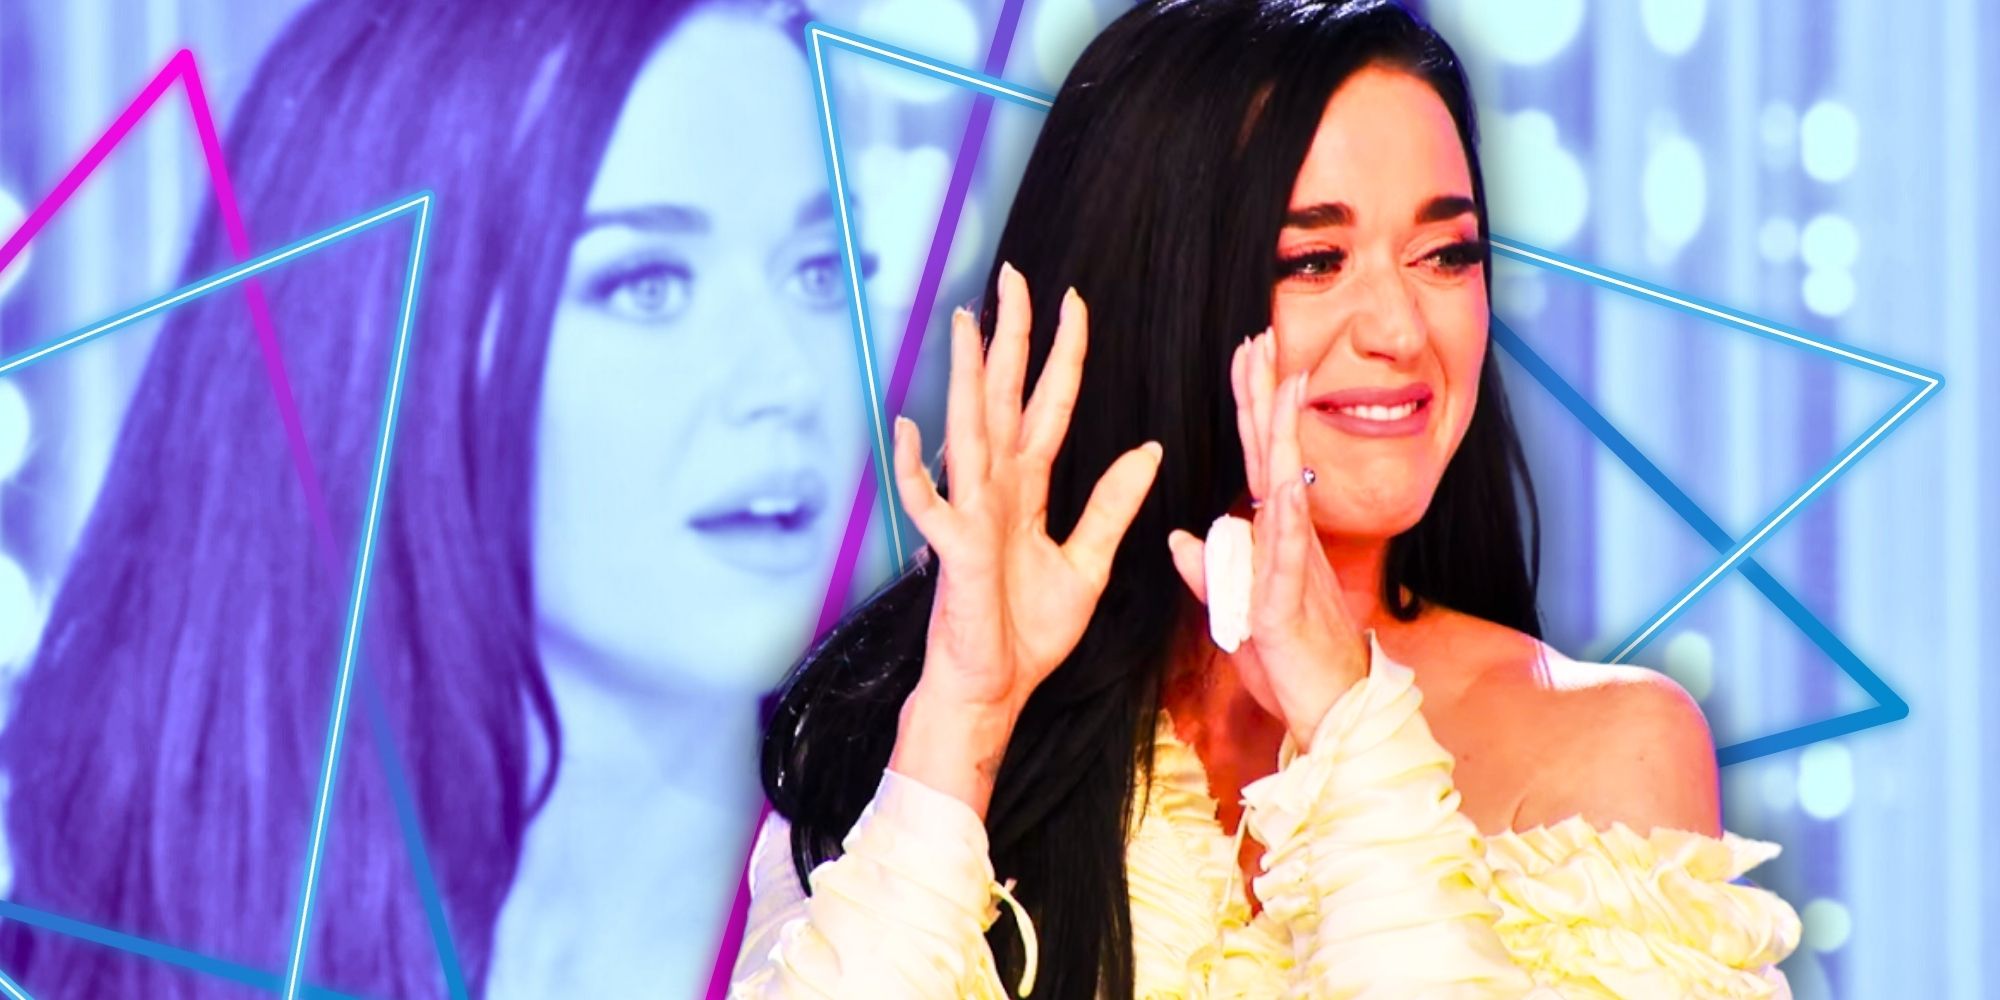 La emotiva audición de Michael Rice en American Idol hace llorar a Katy, Lionel y Luke